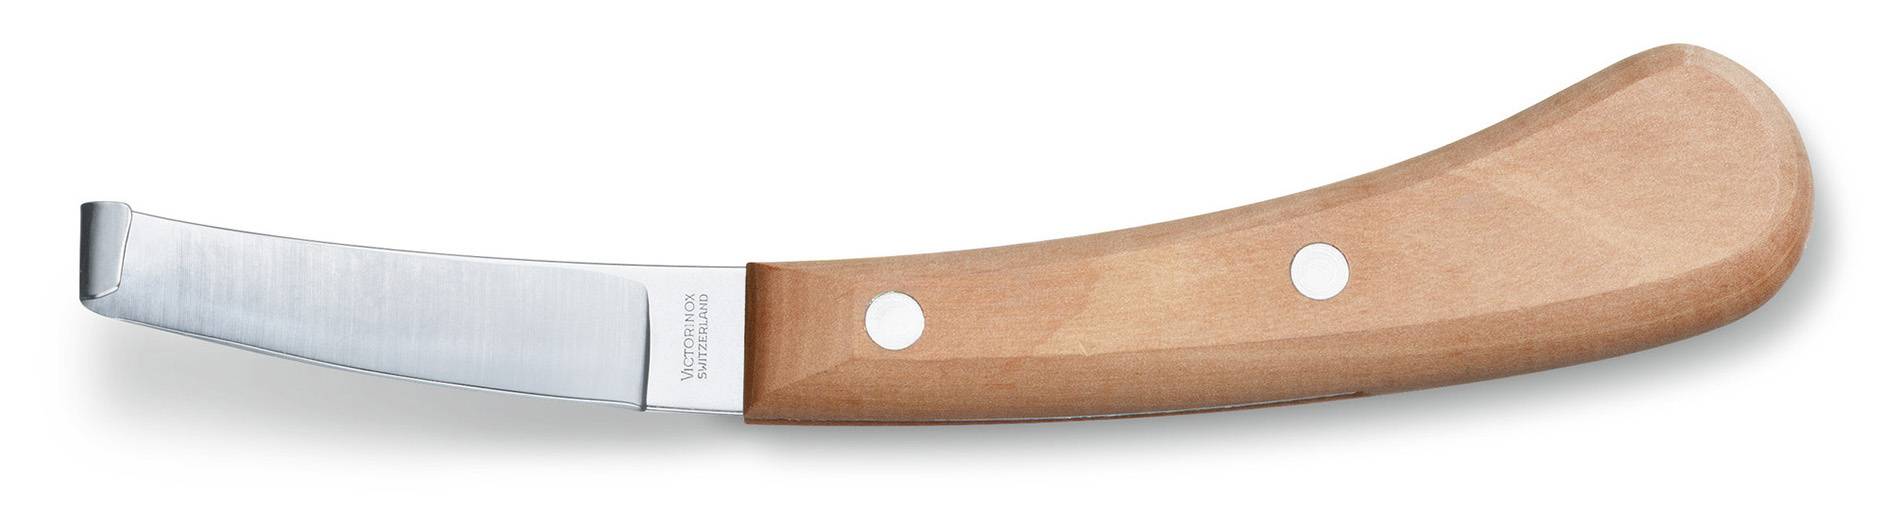 Нож Victorinox 6.6208 дерево